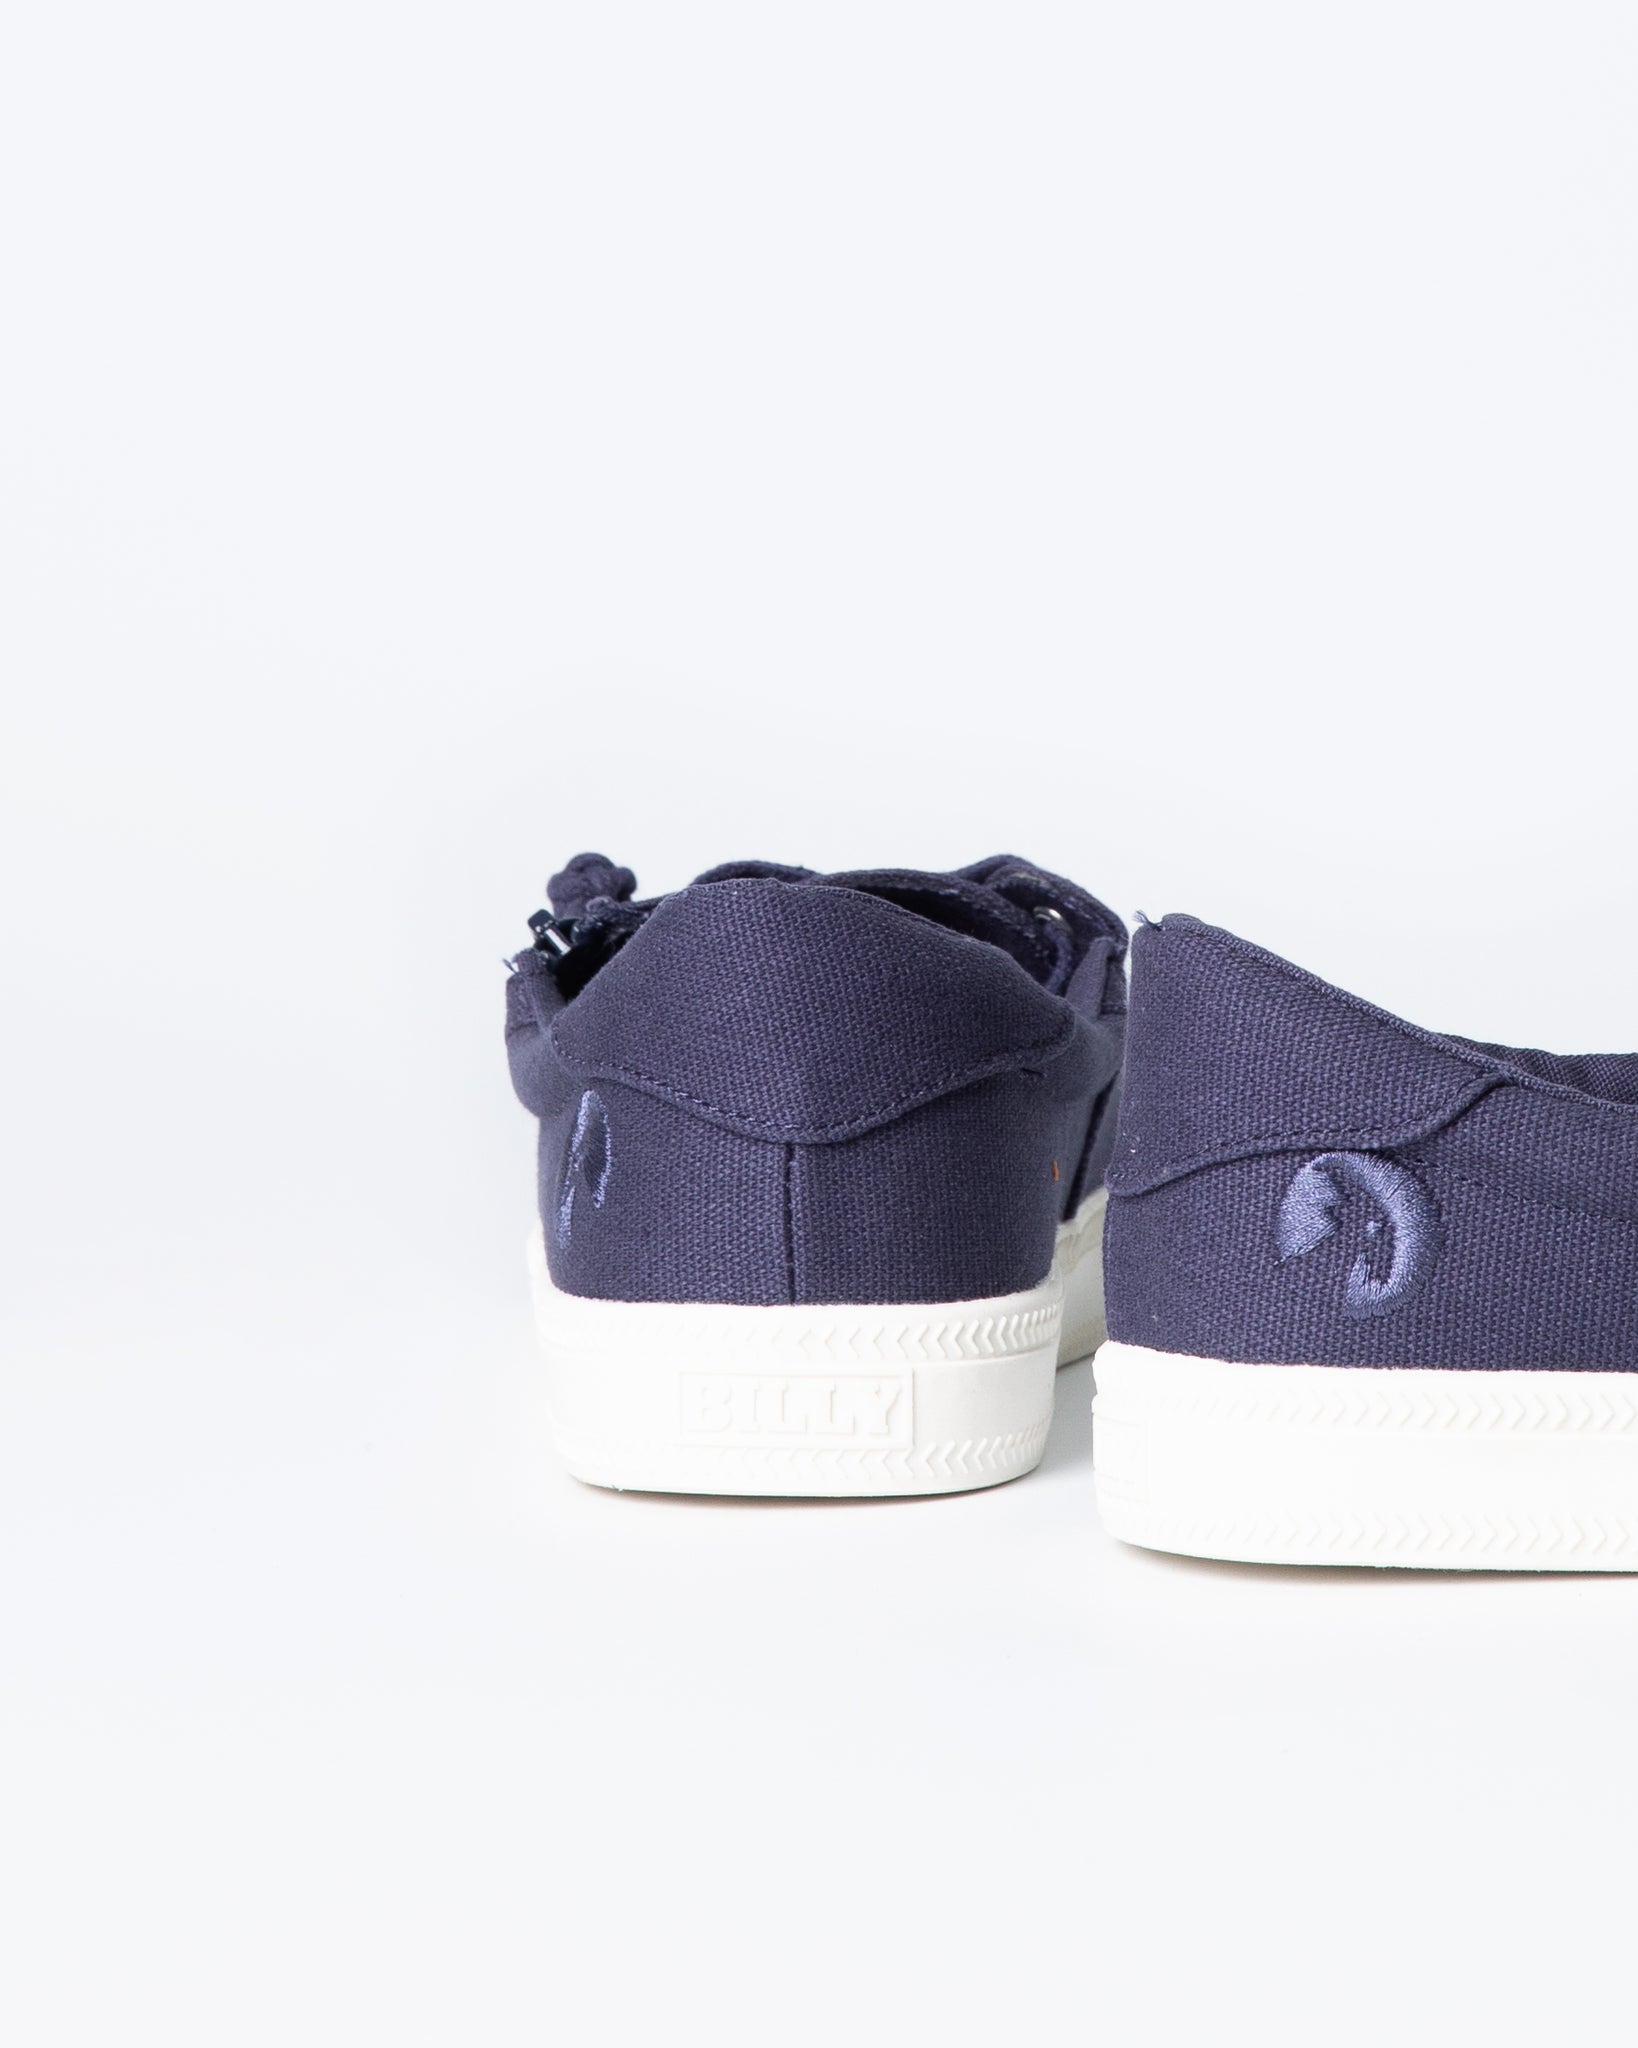 Low Rise Sneaker (Toddler) - Navy